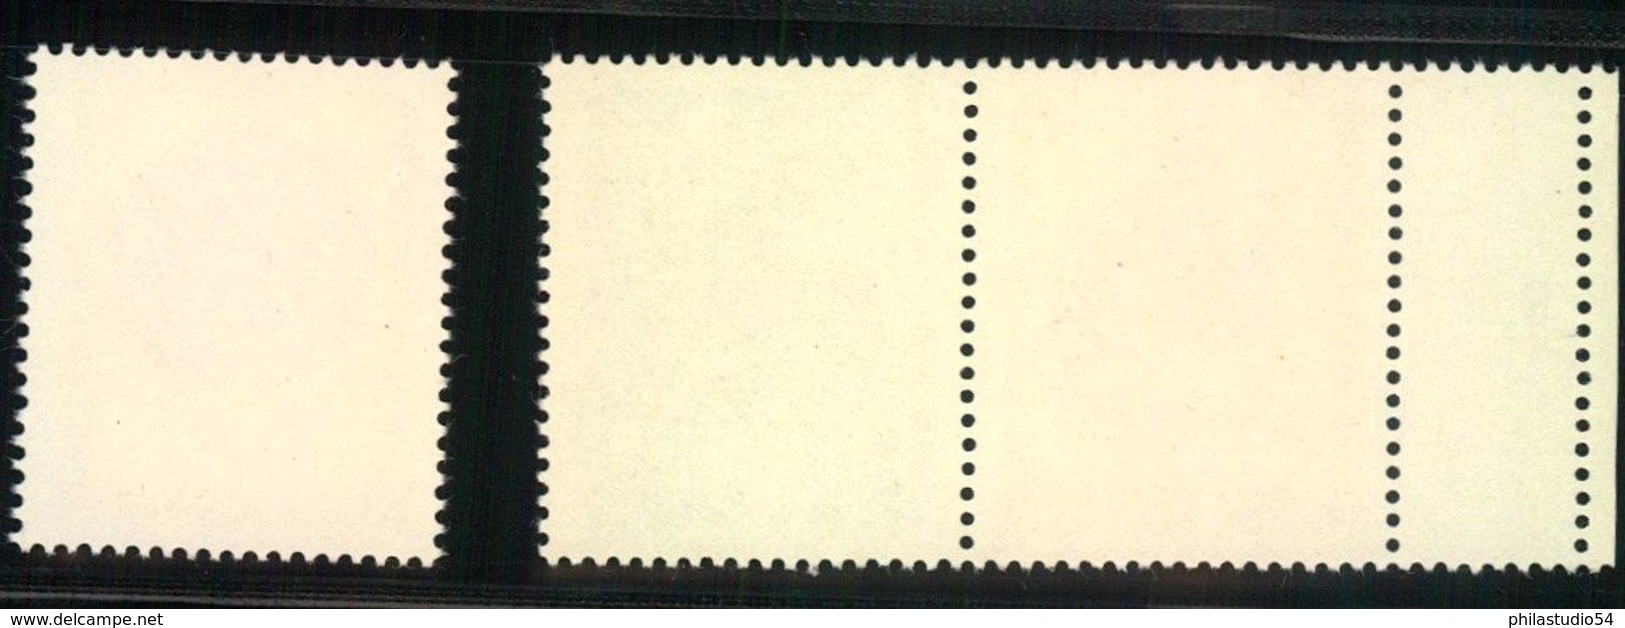 1969, Lausitzer Volkskunst, Zdr 10 Und 50 Pfg. Postfrisch Mit Leefeld Links Und 20 Pfg.Einzelmarke - Neufs